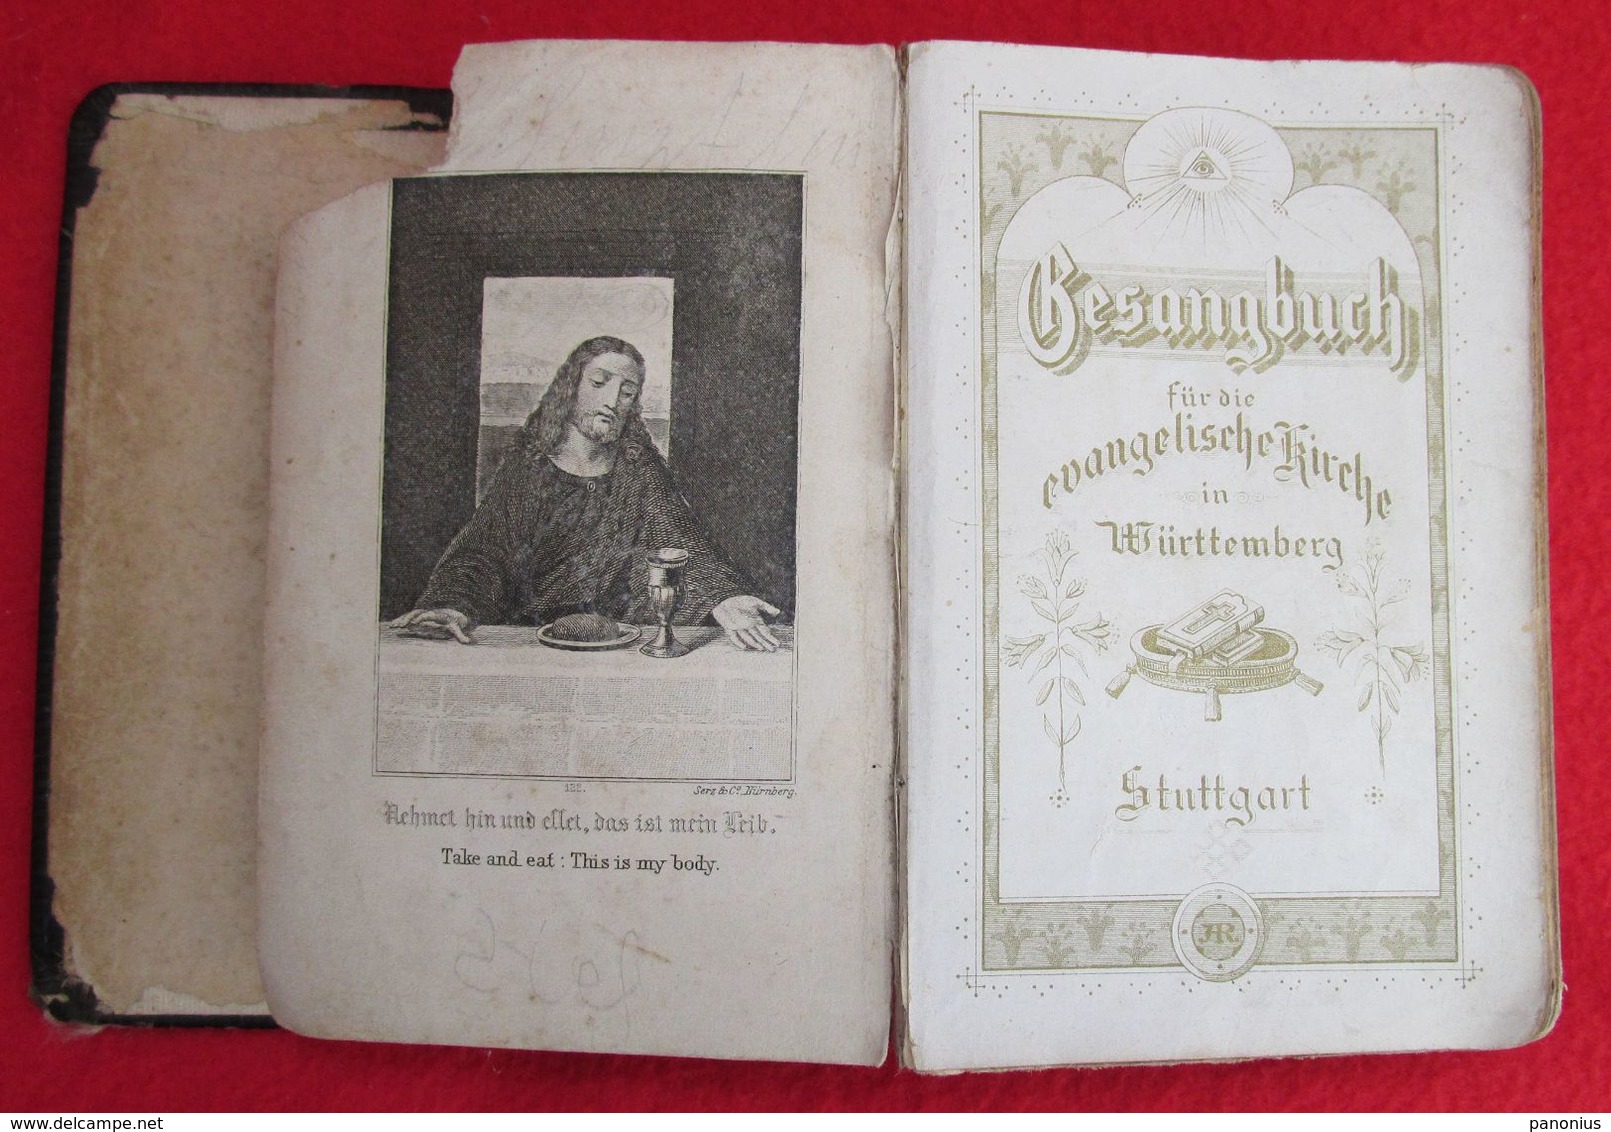 EVANGELISCHE KIRCHE / EVANGELICAL CHURCH, GEBETSBUCH PRAYER BOOK, STUTTGART, Year 1895 - Christendom